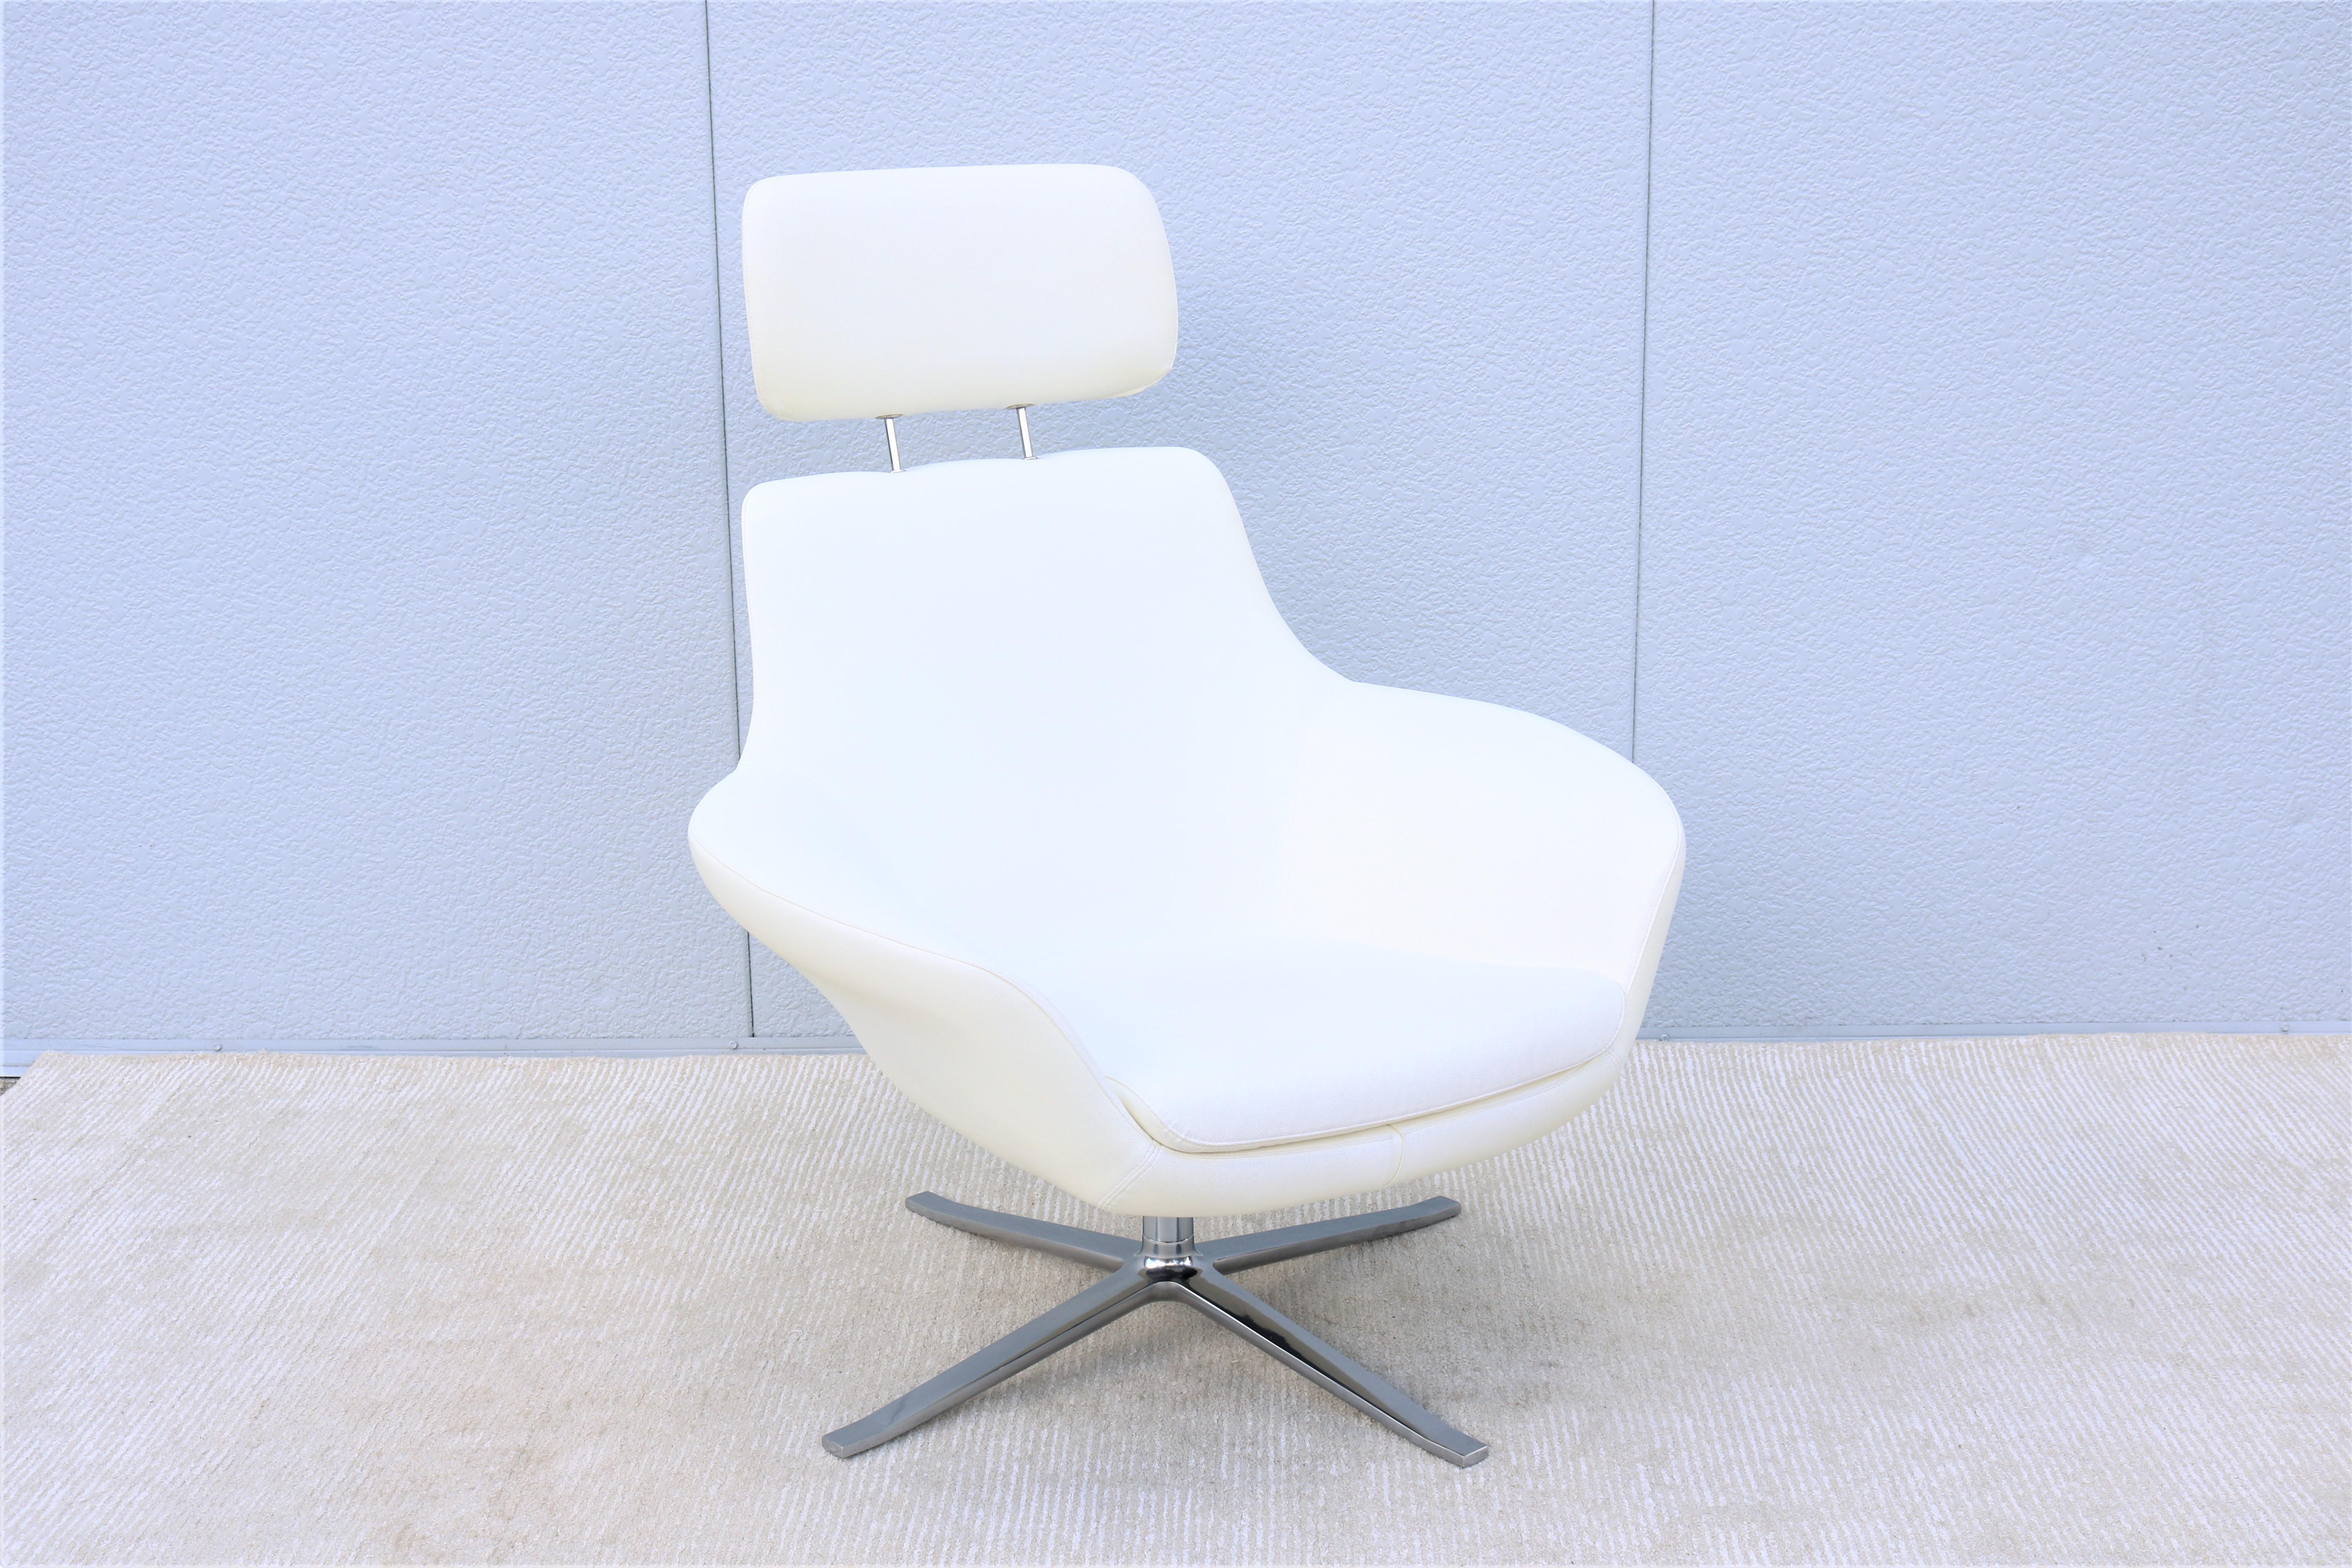 La beauté moderne et le design intelligent de la chaise longue Bob s'intègrent parfaitement dans tous les environnements et parmi les designs classiques du milieu du siècle.
Un chef-d'œuvre à la fois élégant et contemporain, confortable et bien